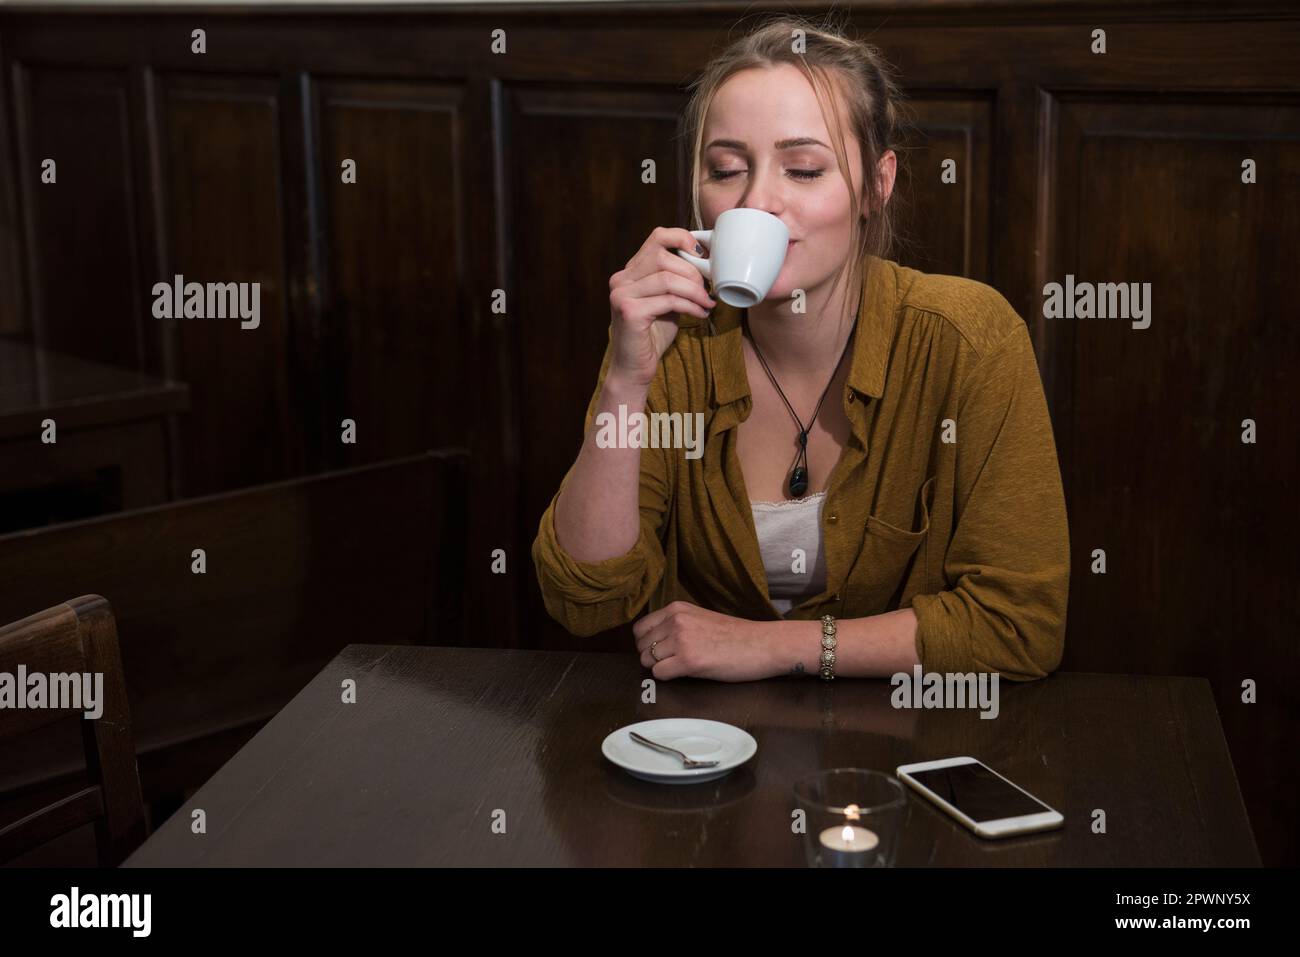 Jeune femme avec les yeux fermés buvant du café tout en mobile gardé sur la table au restaurant Banque D'Images